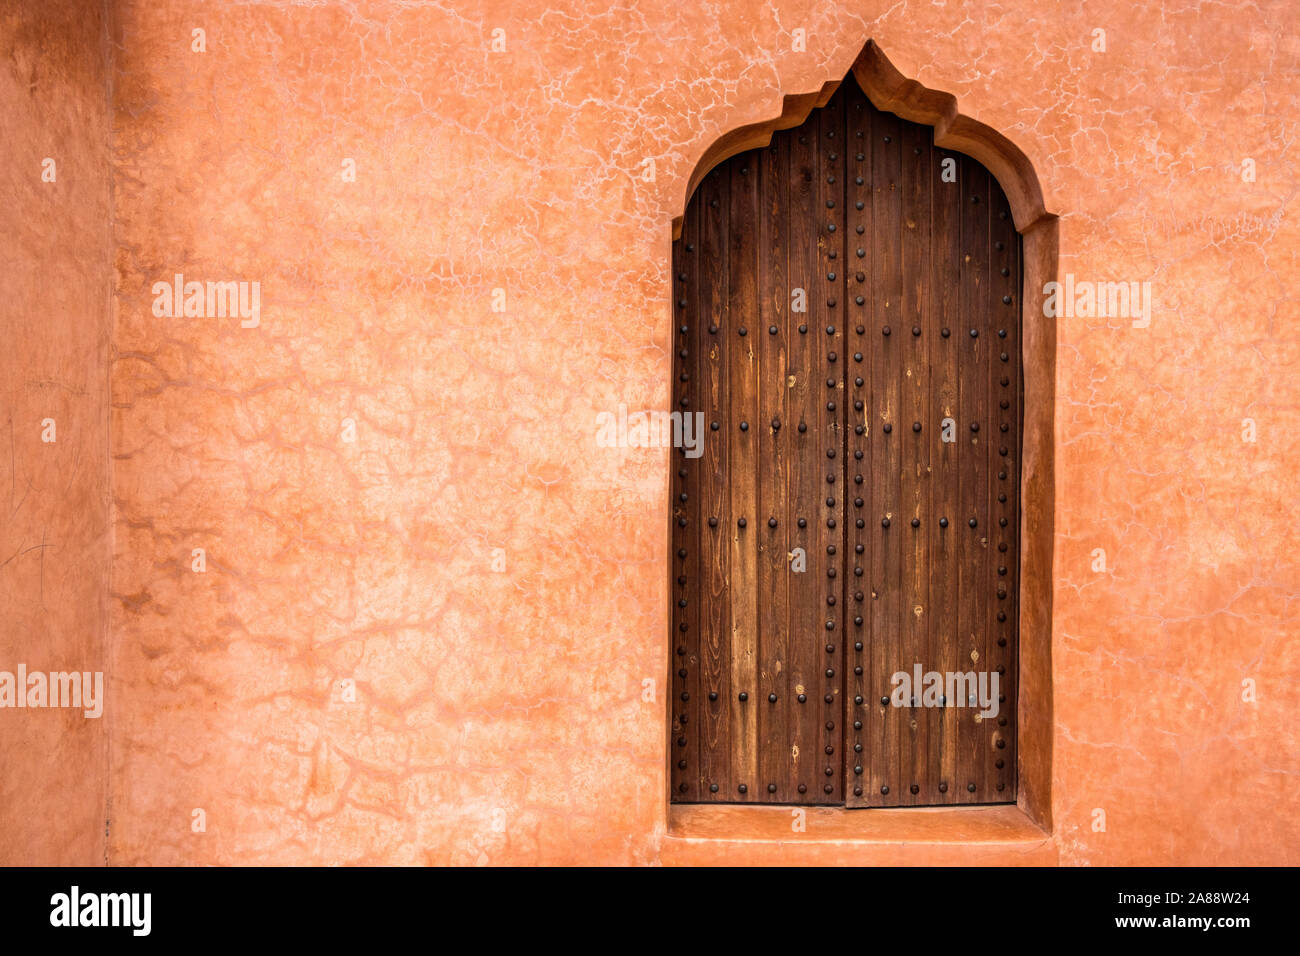 Maroc, Marrakech. Les jardins de la Menara. Détail architectural sur une porte en bois sur un mur dans l'ocre. Banque D'Images